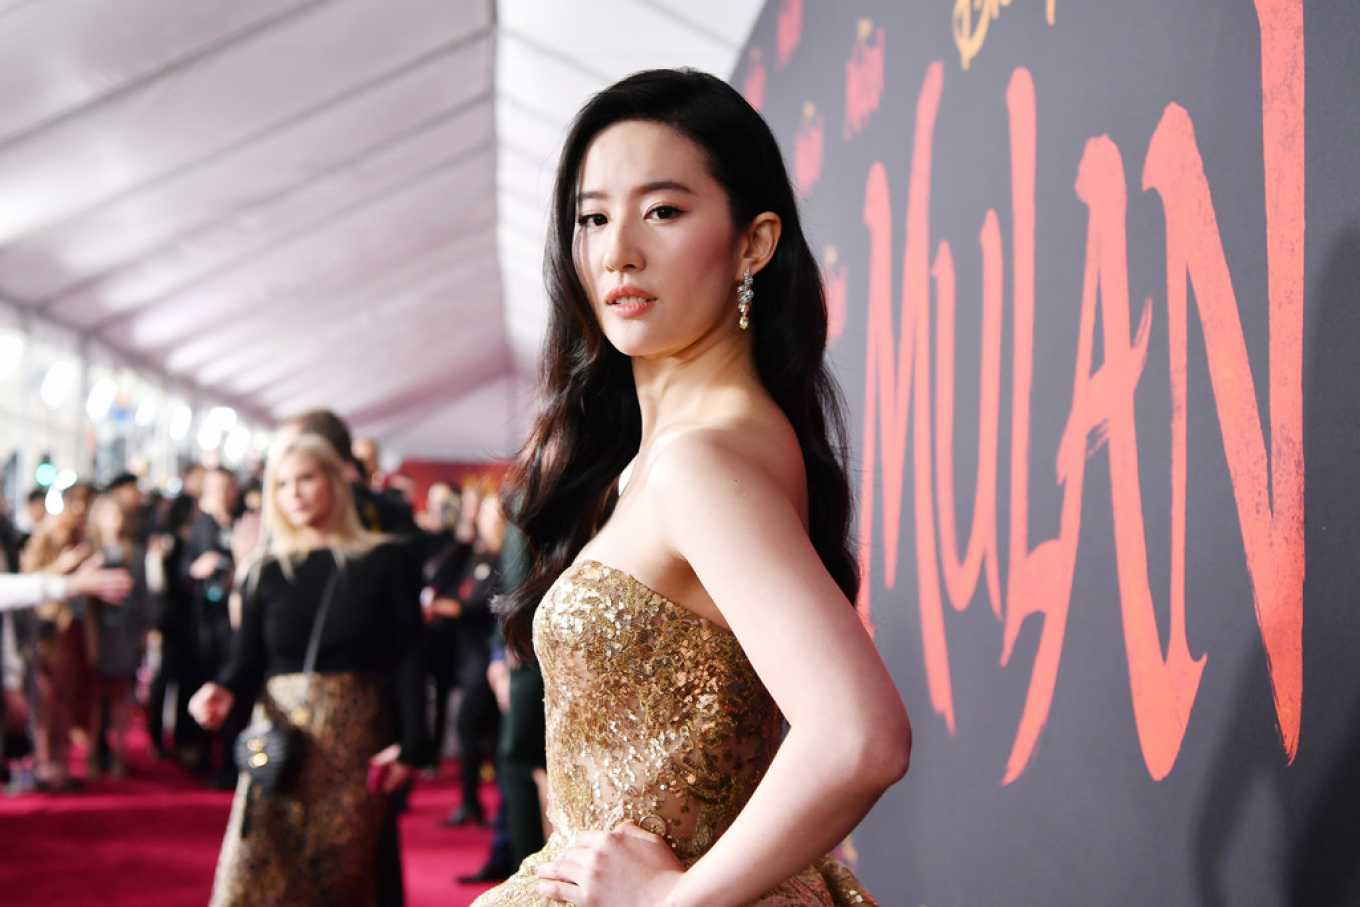 Protagonista de película “infantil” Mulan, ofreció servicios sexuales a Hunter Biden